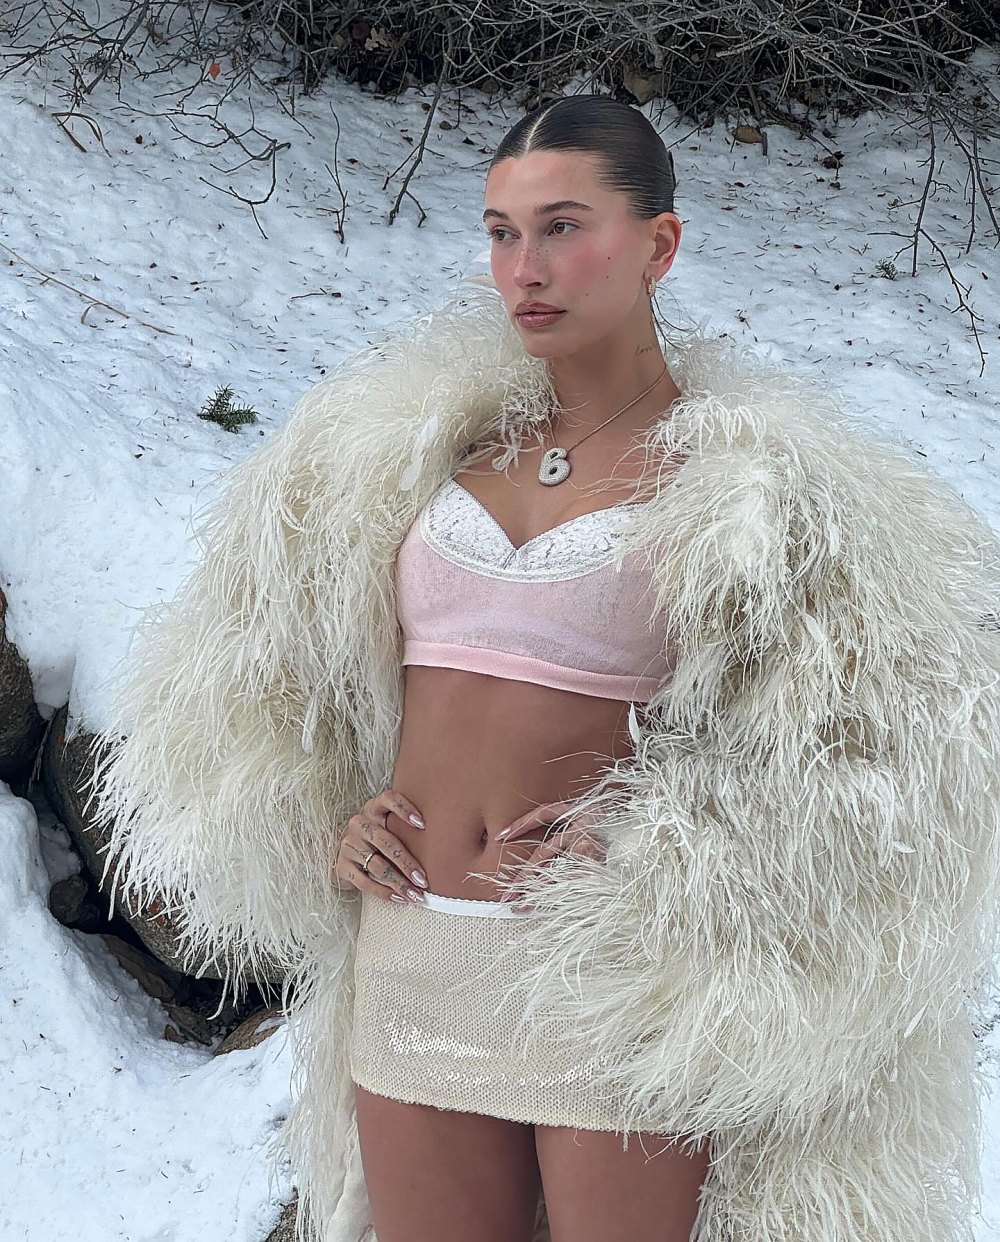 Hailey Bieber Wears Lingerie in Snow 02